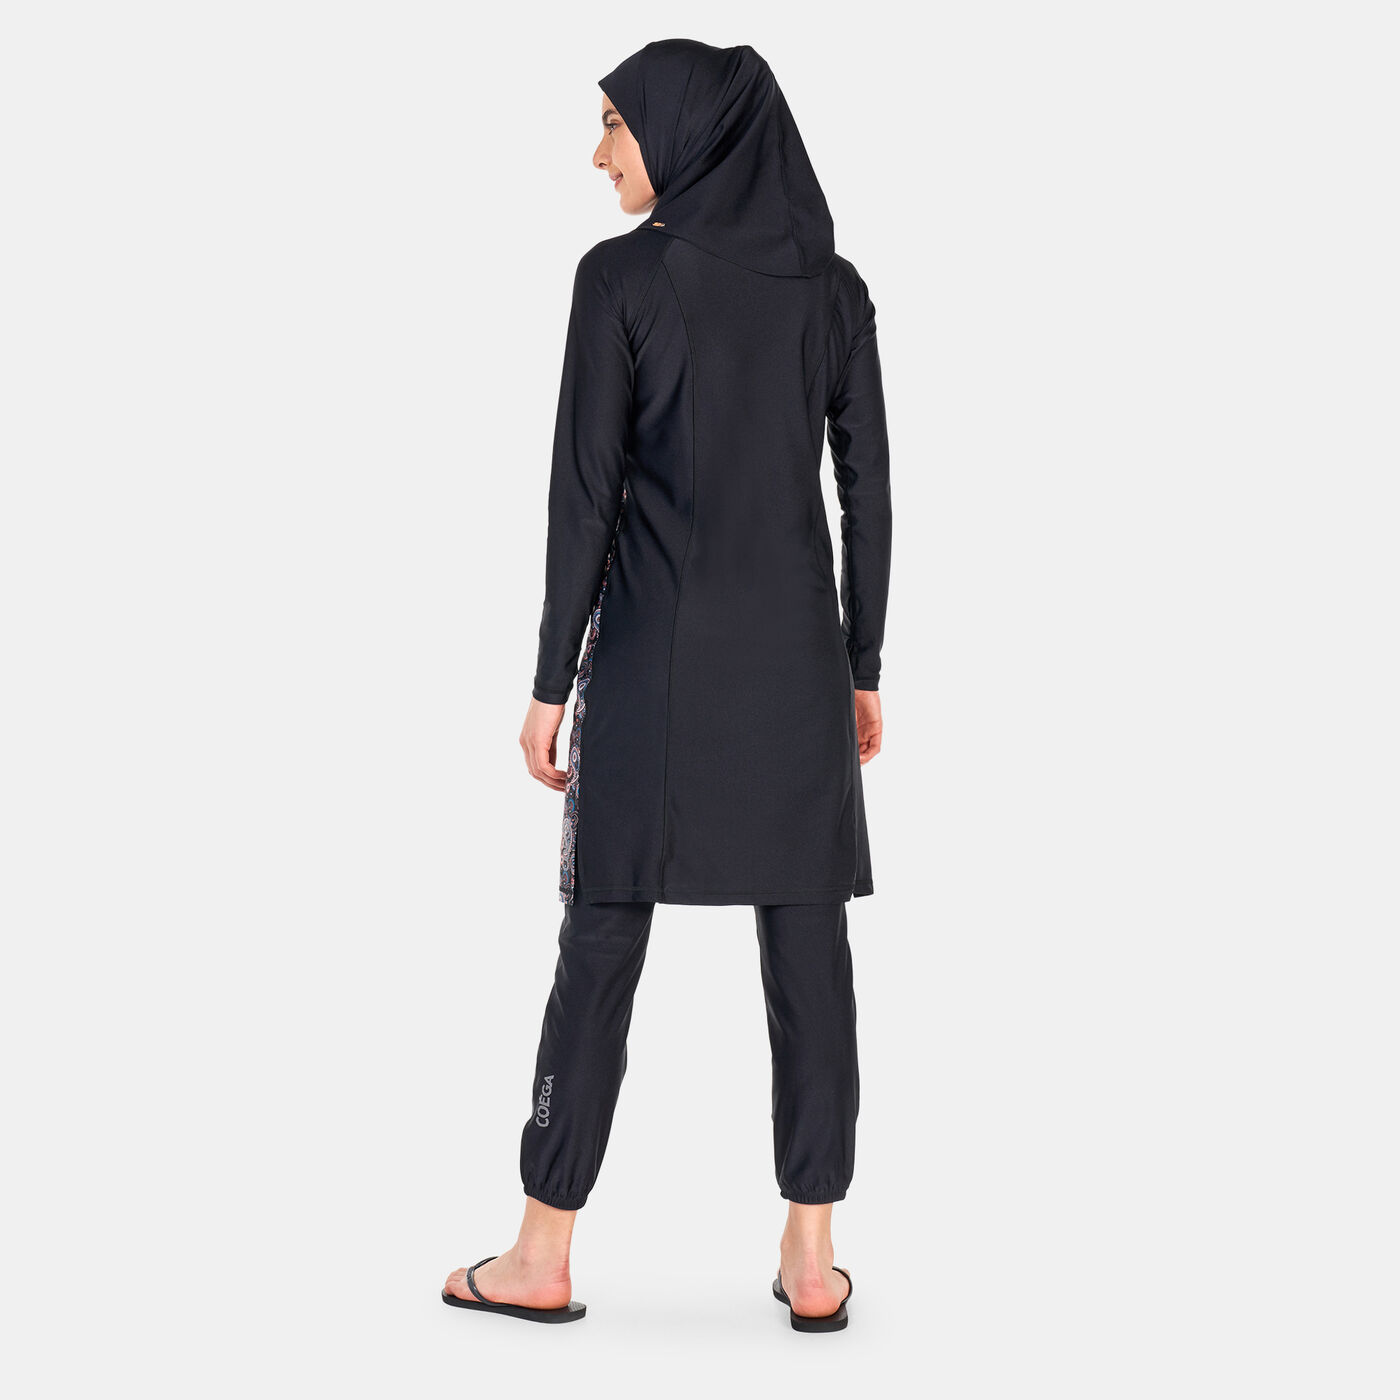 Women's Islamic 3-Piece Swimsuit